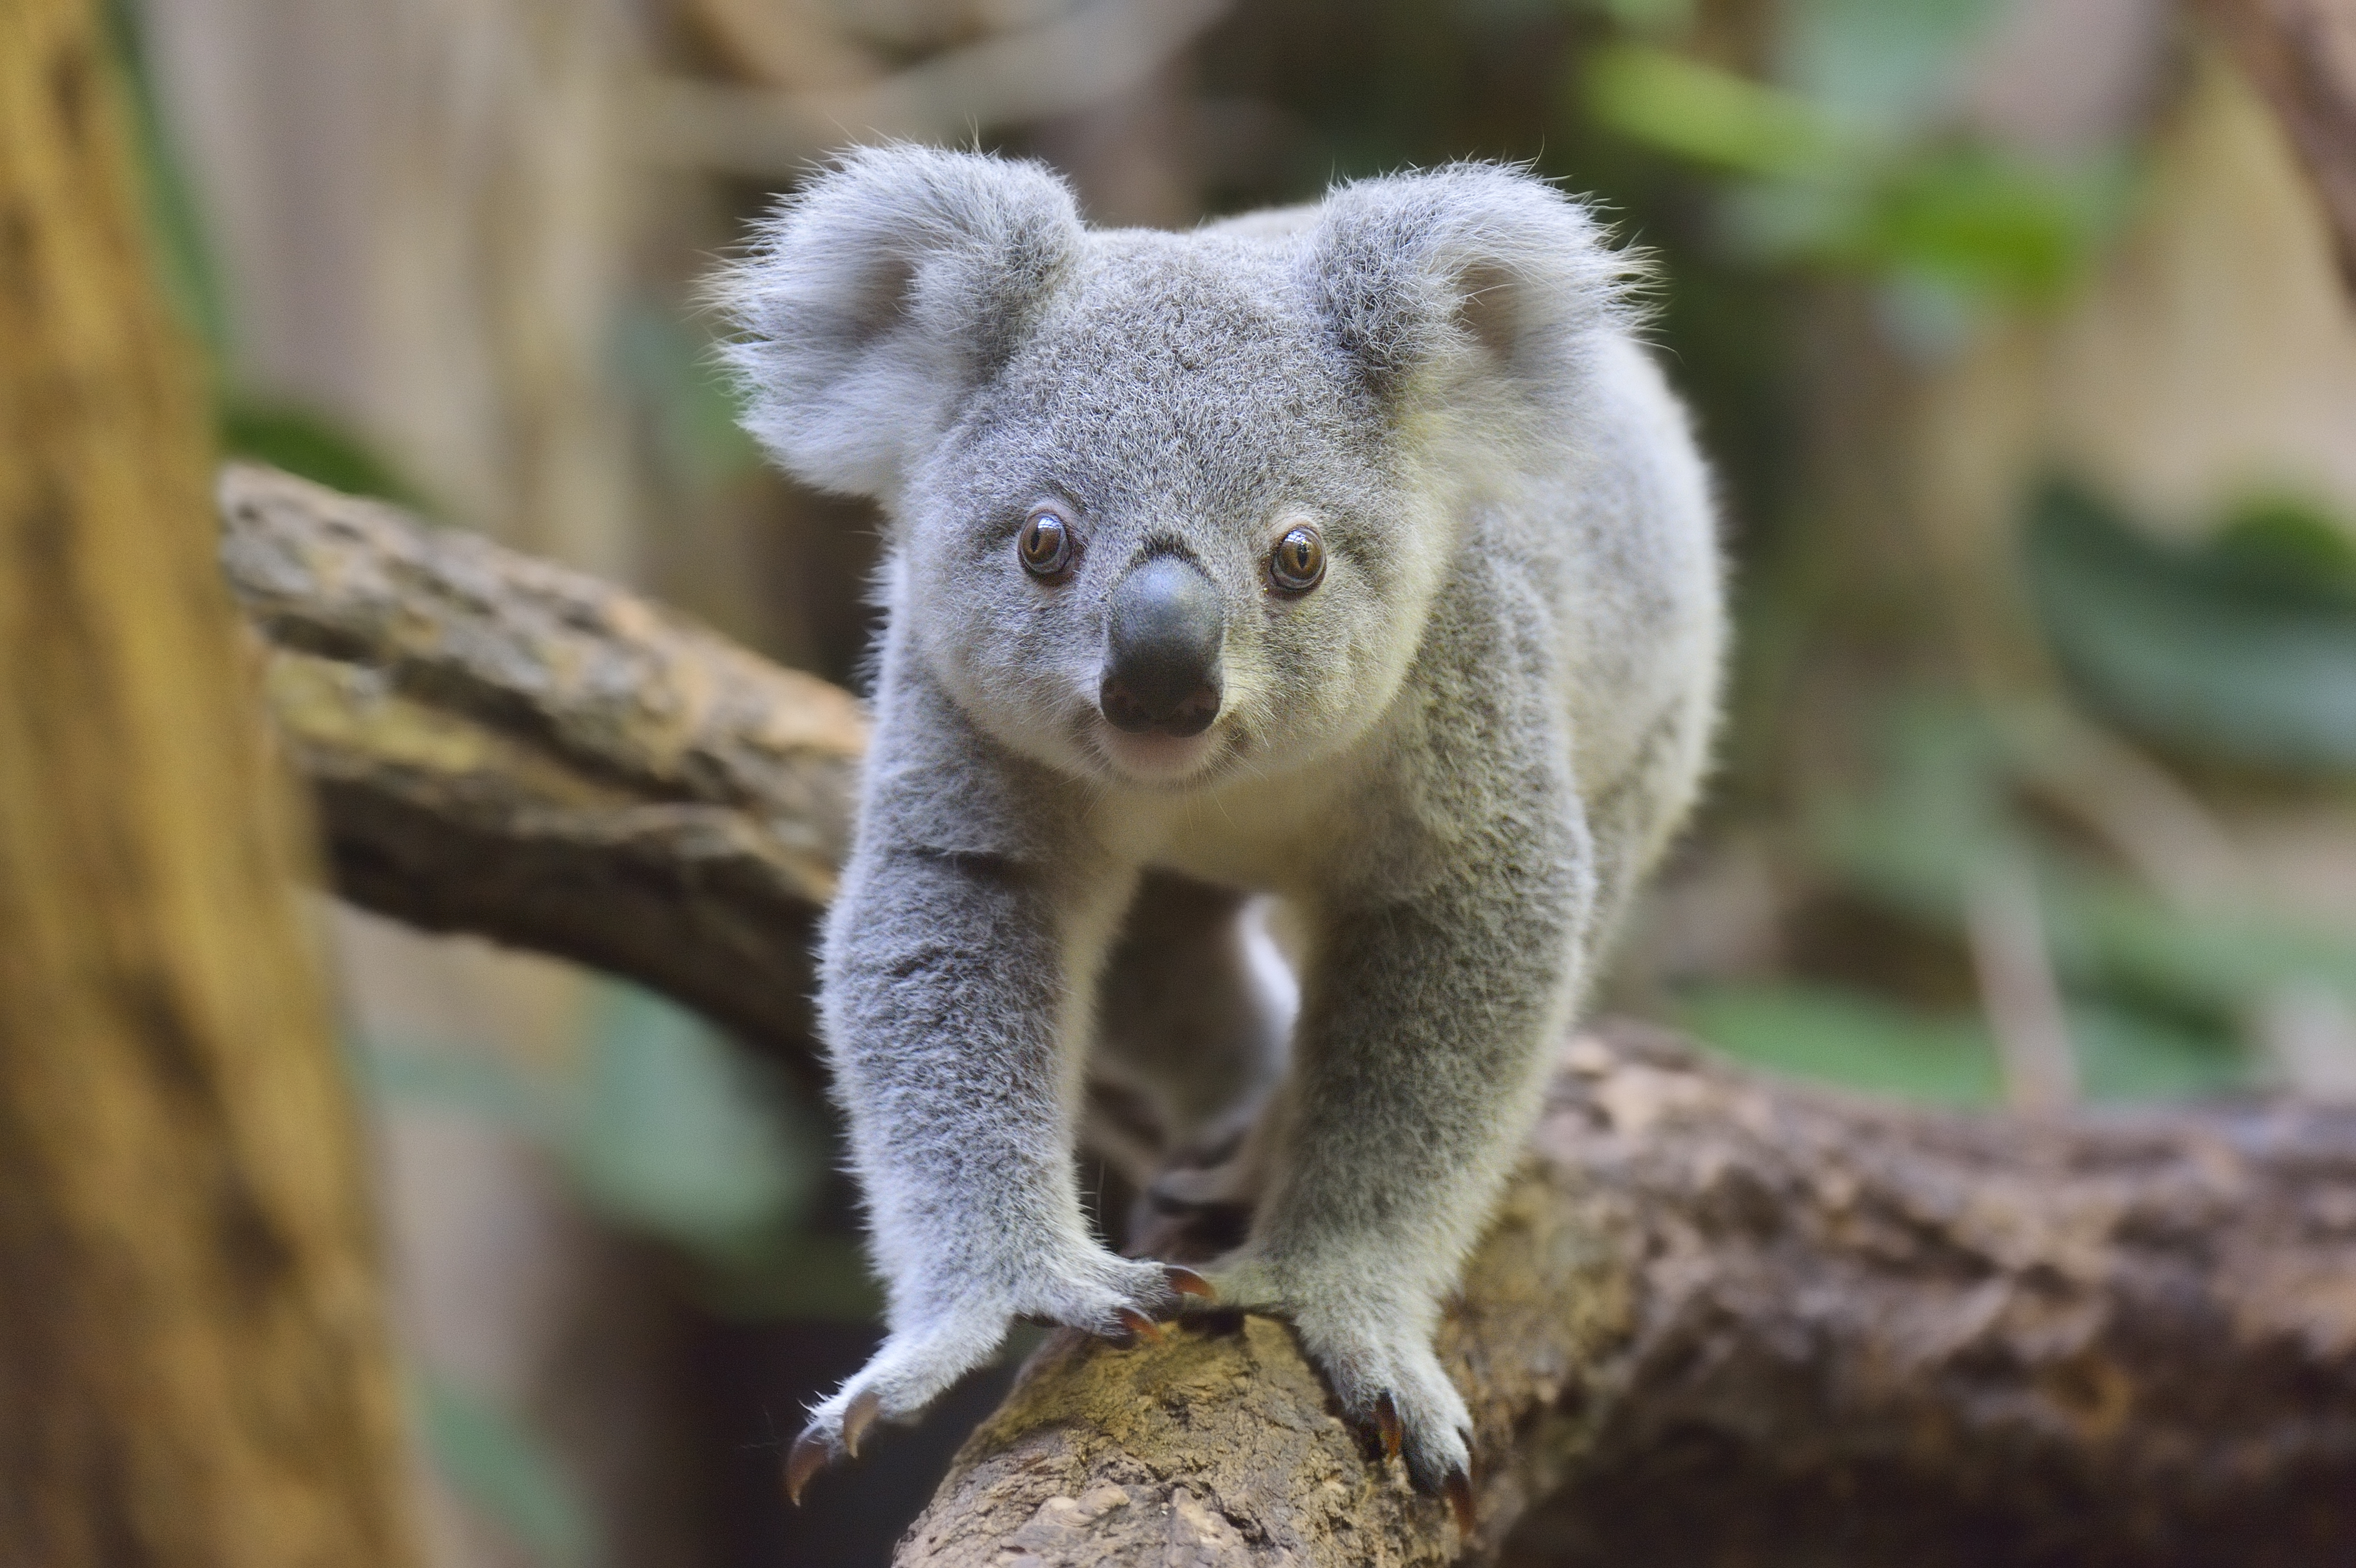 A koala in Germany